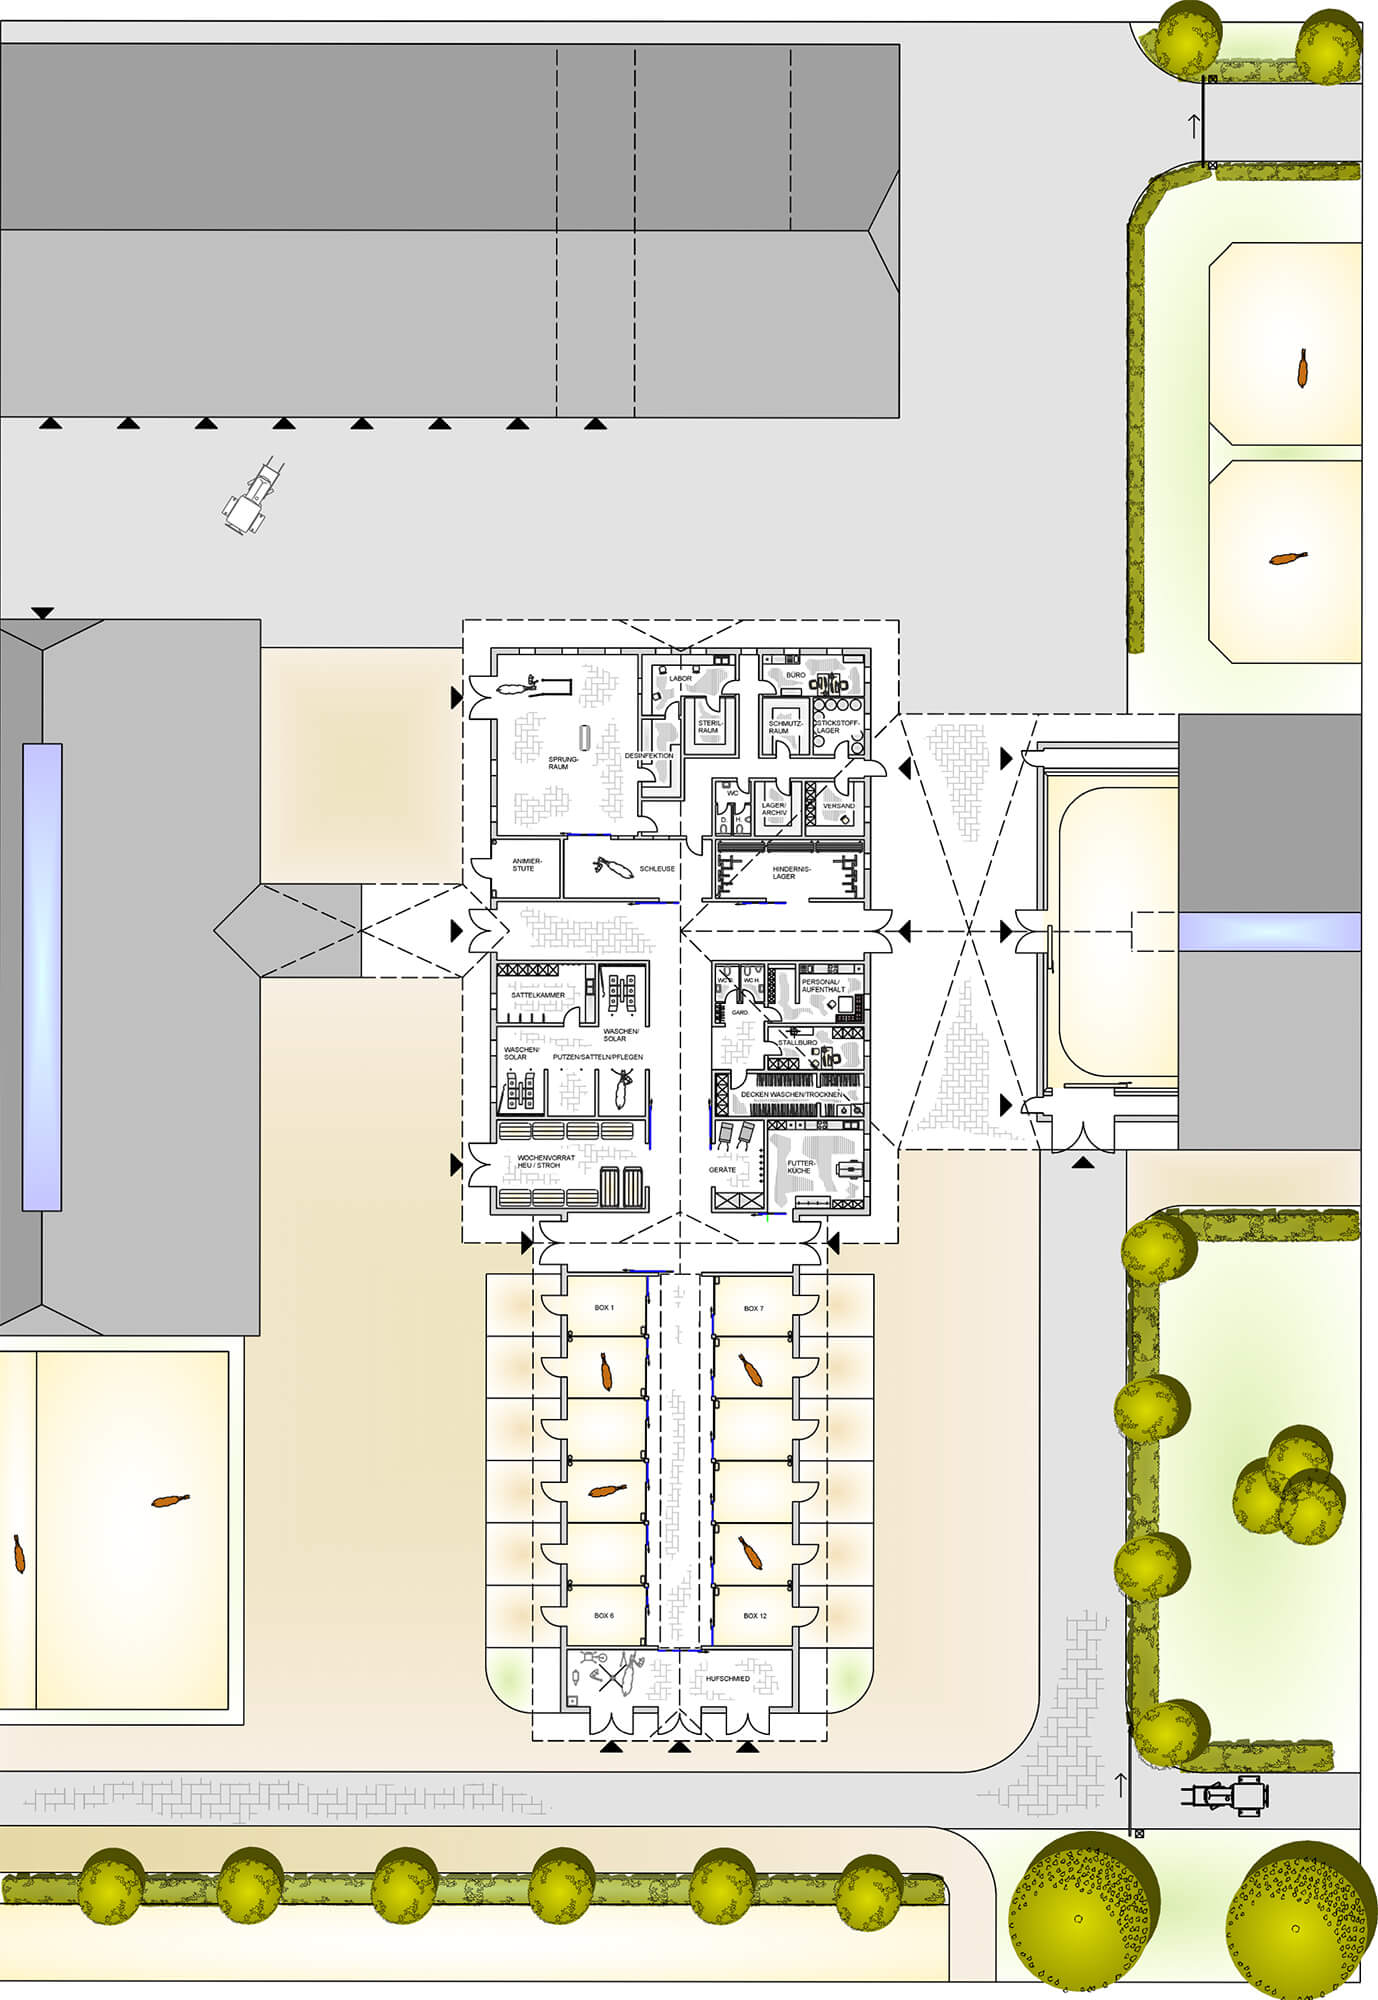 Detaillierter Plan eines Gestüts mit verschiedenen Funktionsbereichen, einschließlich Stallungen und Trainingsanlagen, aus der Vogelperspektive